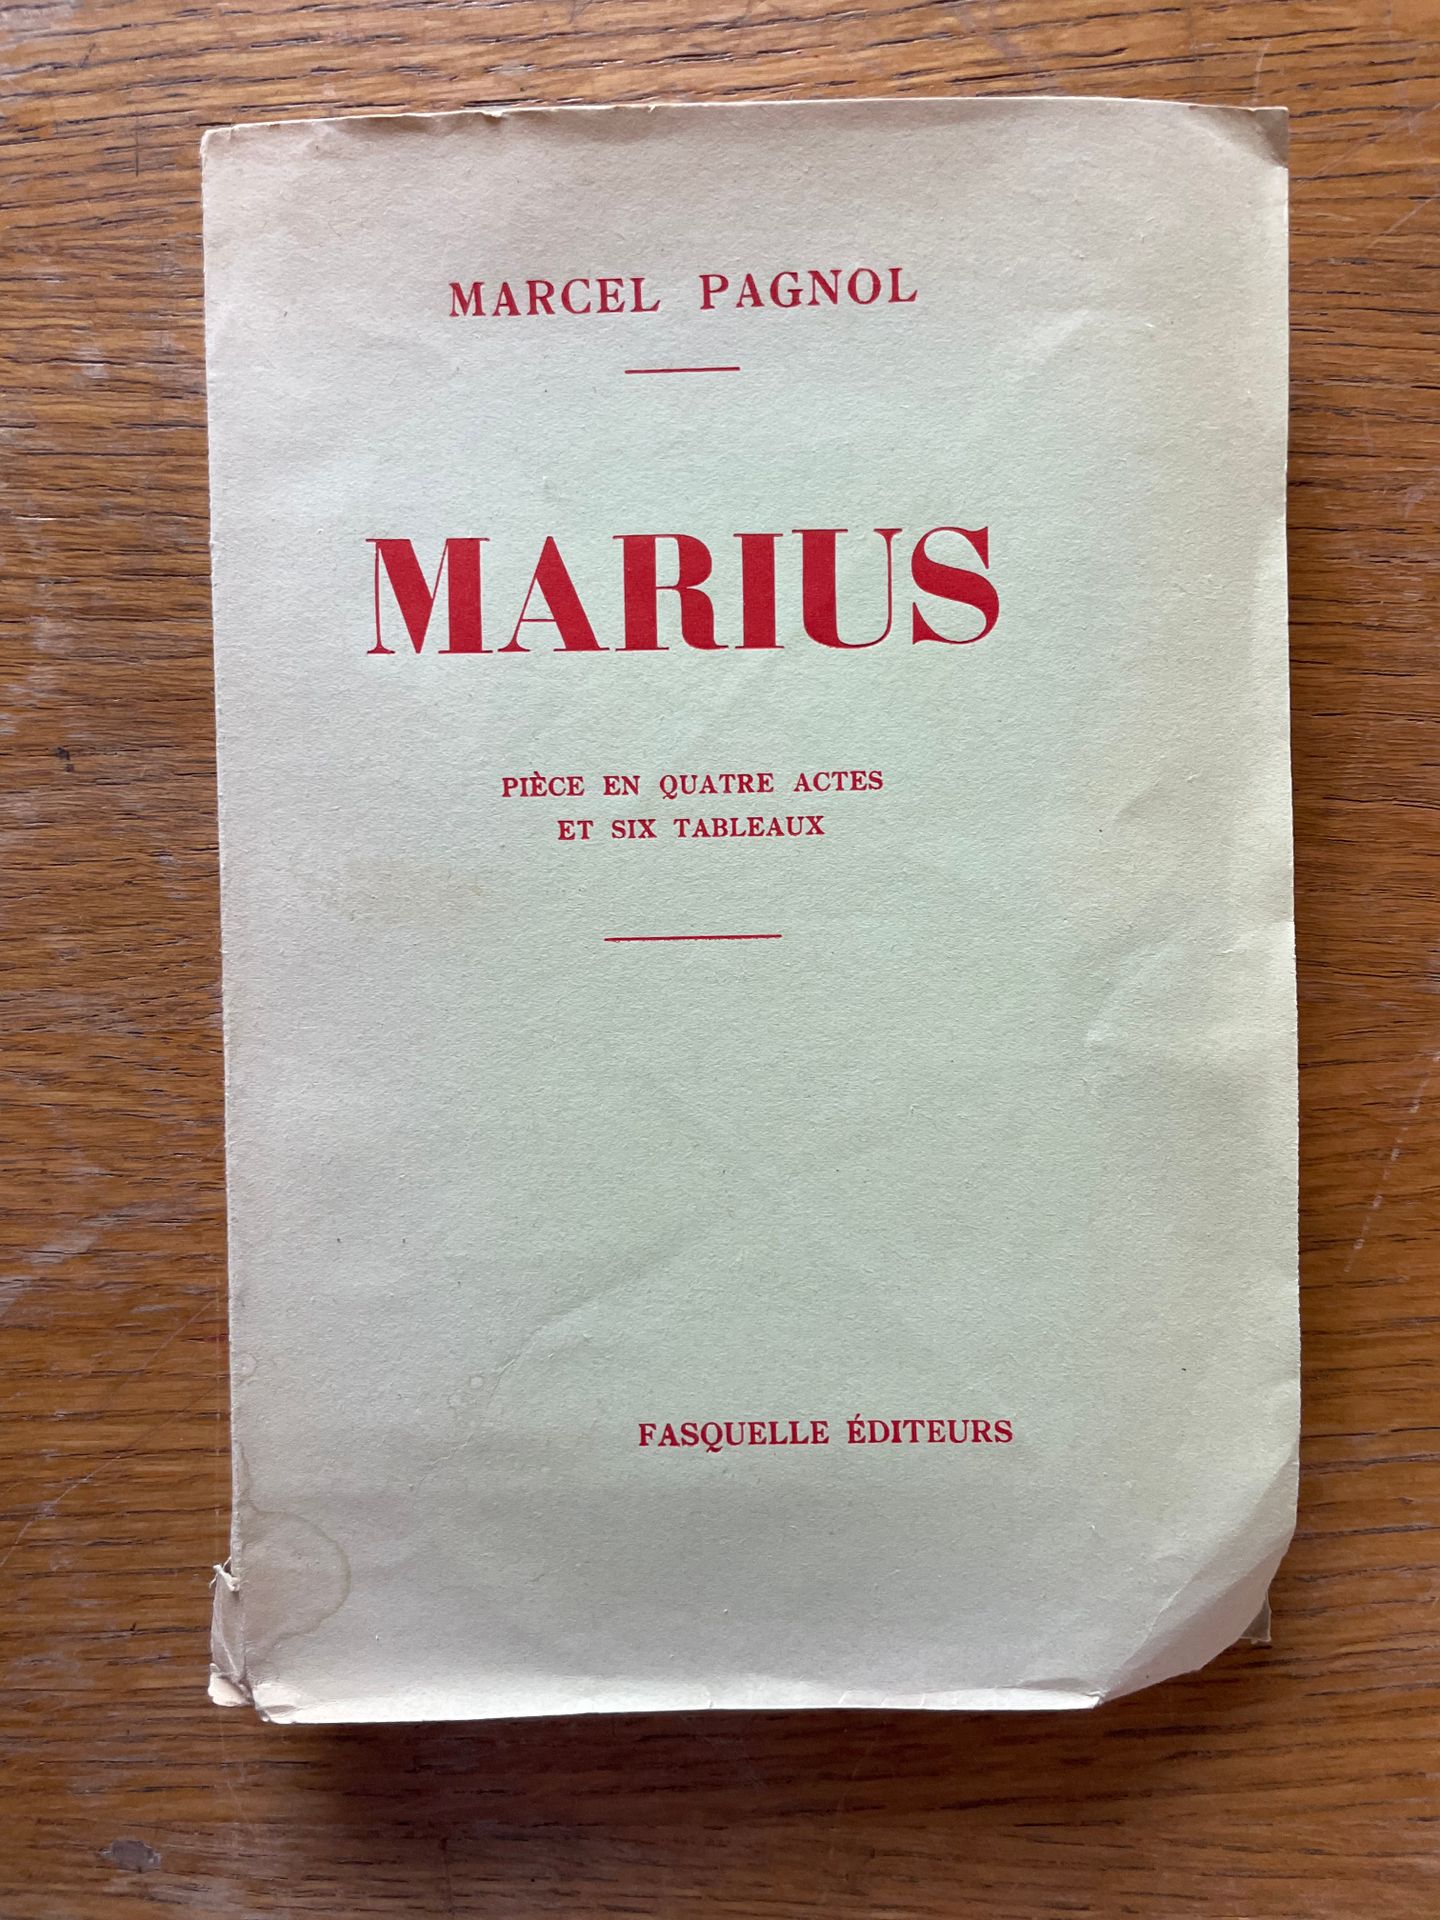 Marcel PAGNOL - Marius París, Fasquelle, 1931
Primera edición
Uno de los 100 eje&hellip;